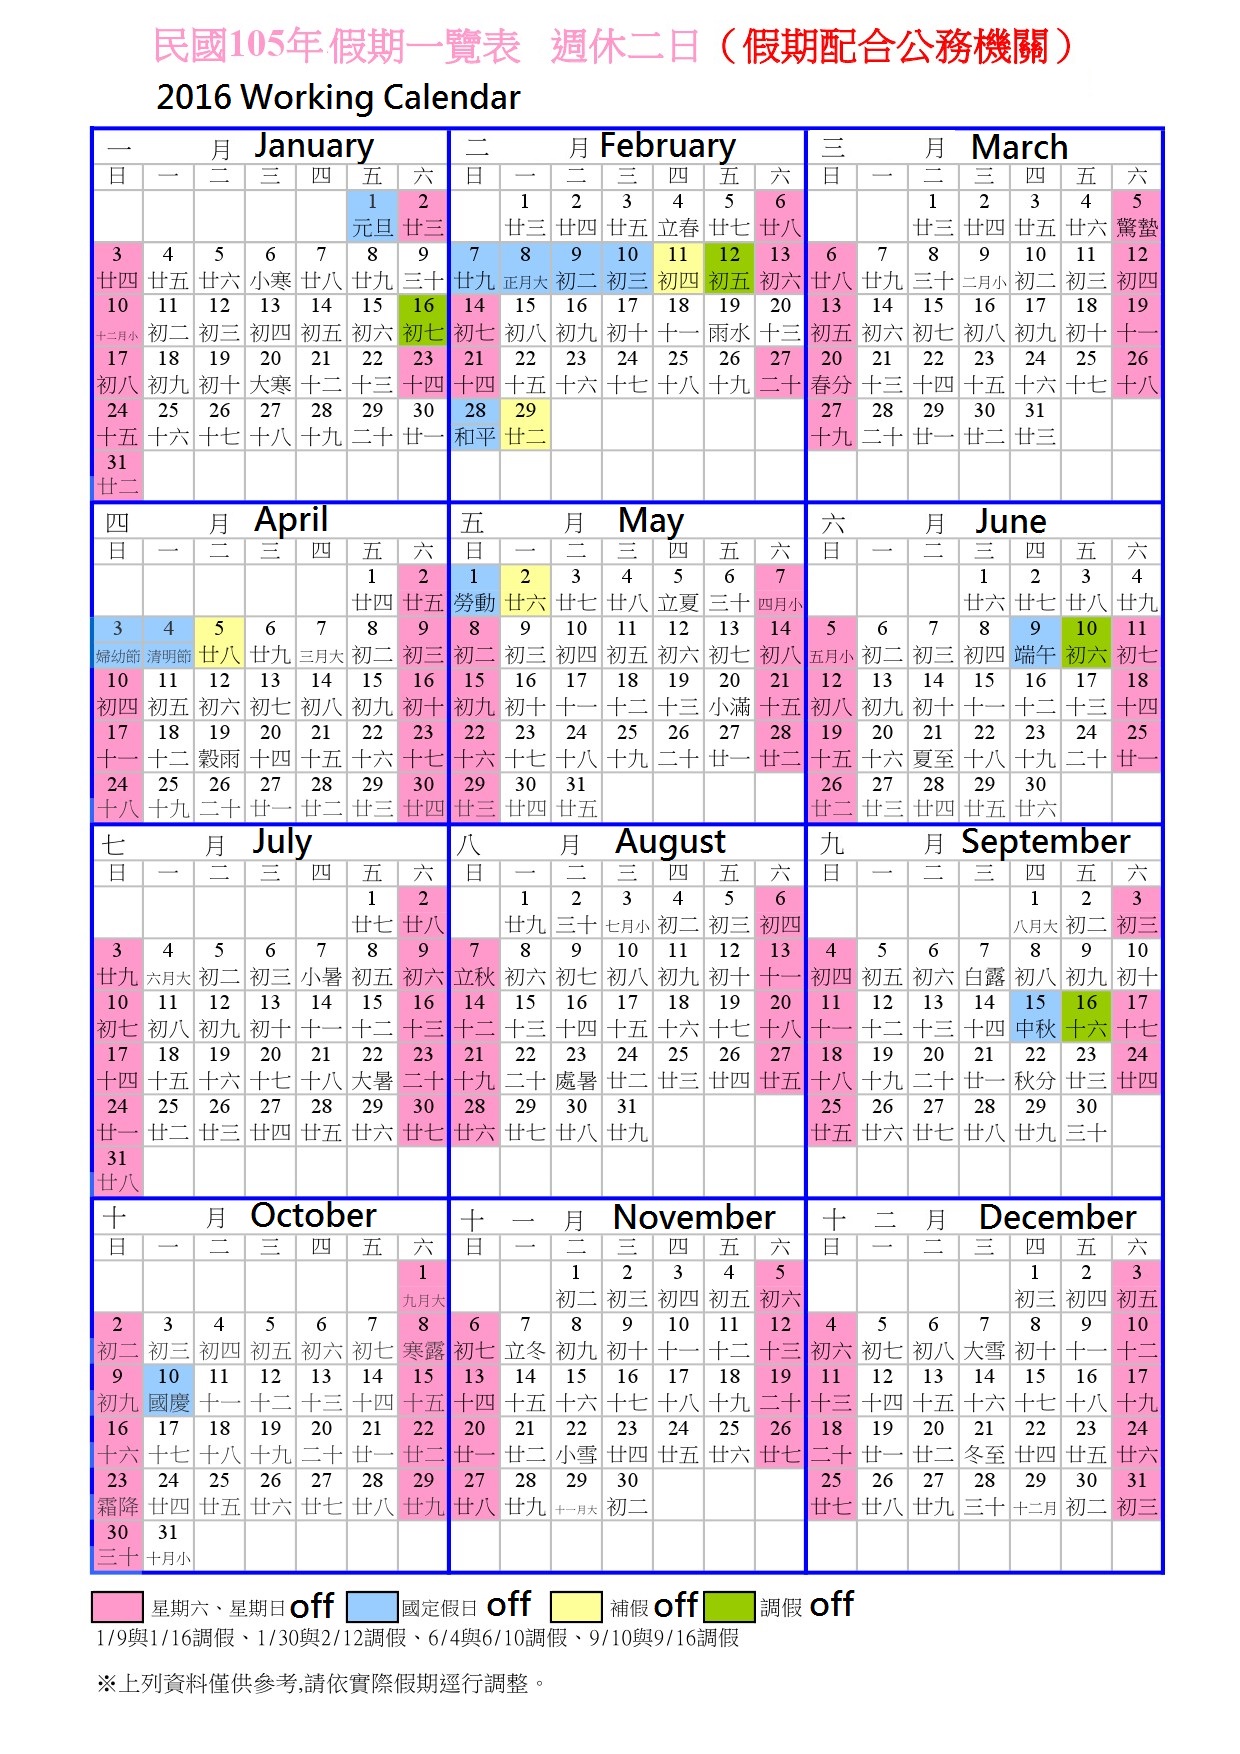 Working Calendar 2016